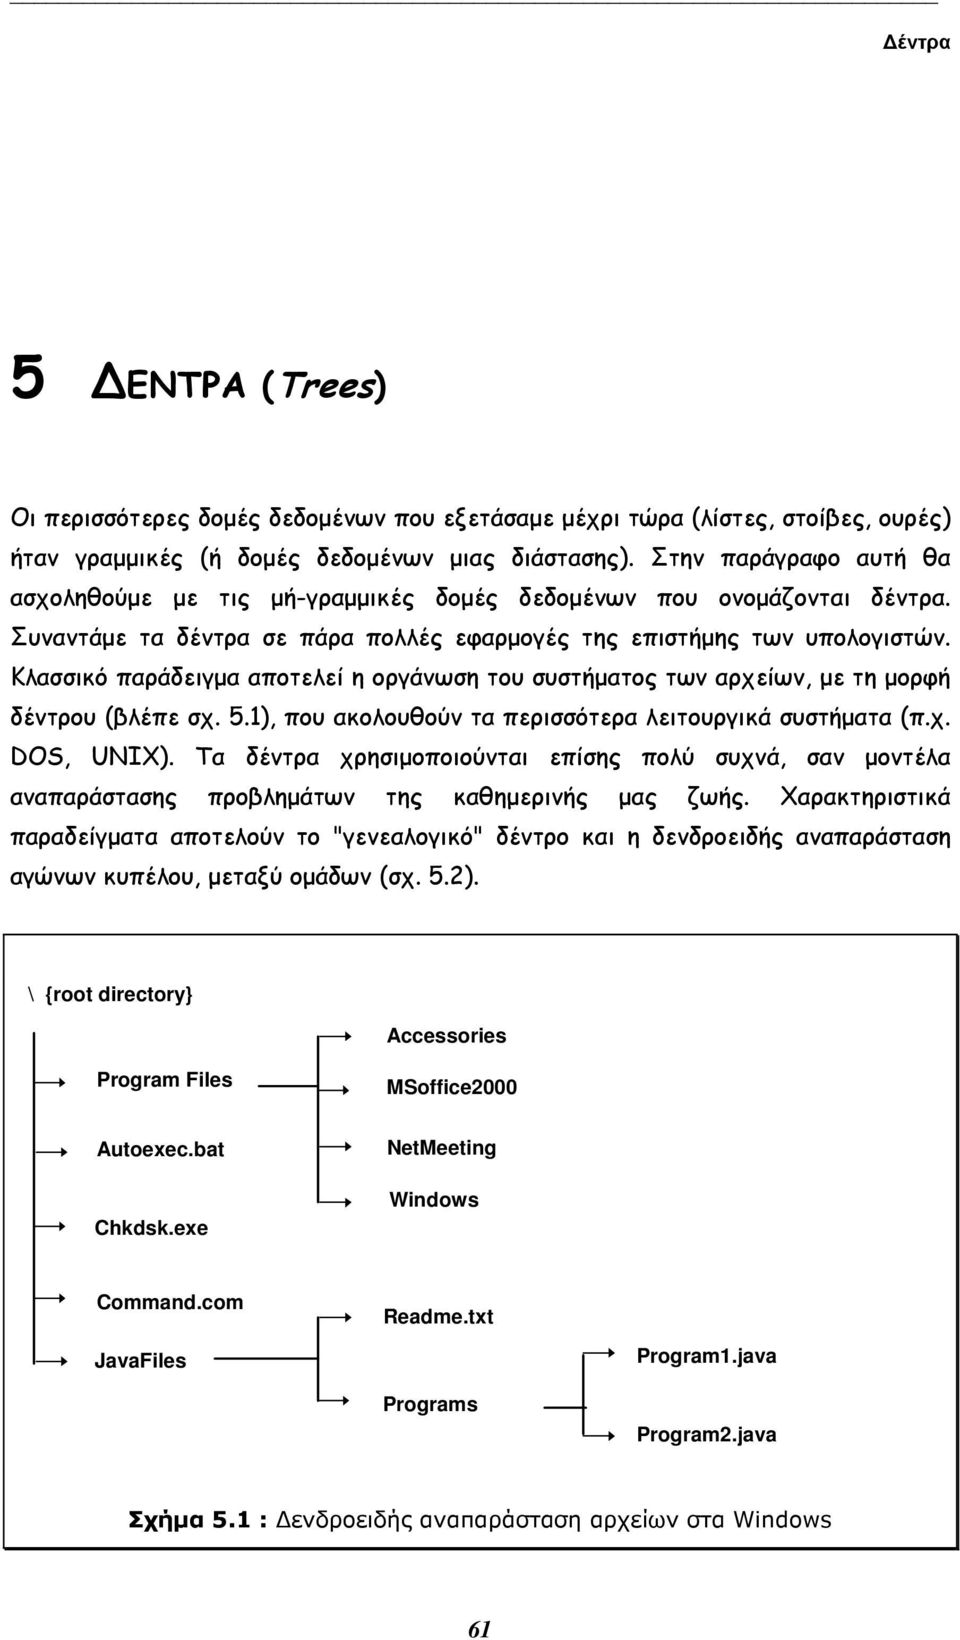 Κλασσικό παράδειγµα αποτελεί η οργάνωση του συστήµατος των αρχείων, µε τη µορφή δέντρου (βλέπε σχ. 5.1), που ακολουθούν τα περισσότερα λειτουργικά συστήµατα (π.χ. DOS, UNIX).